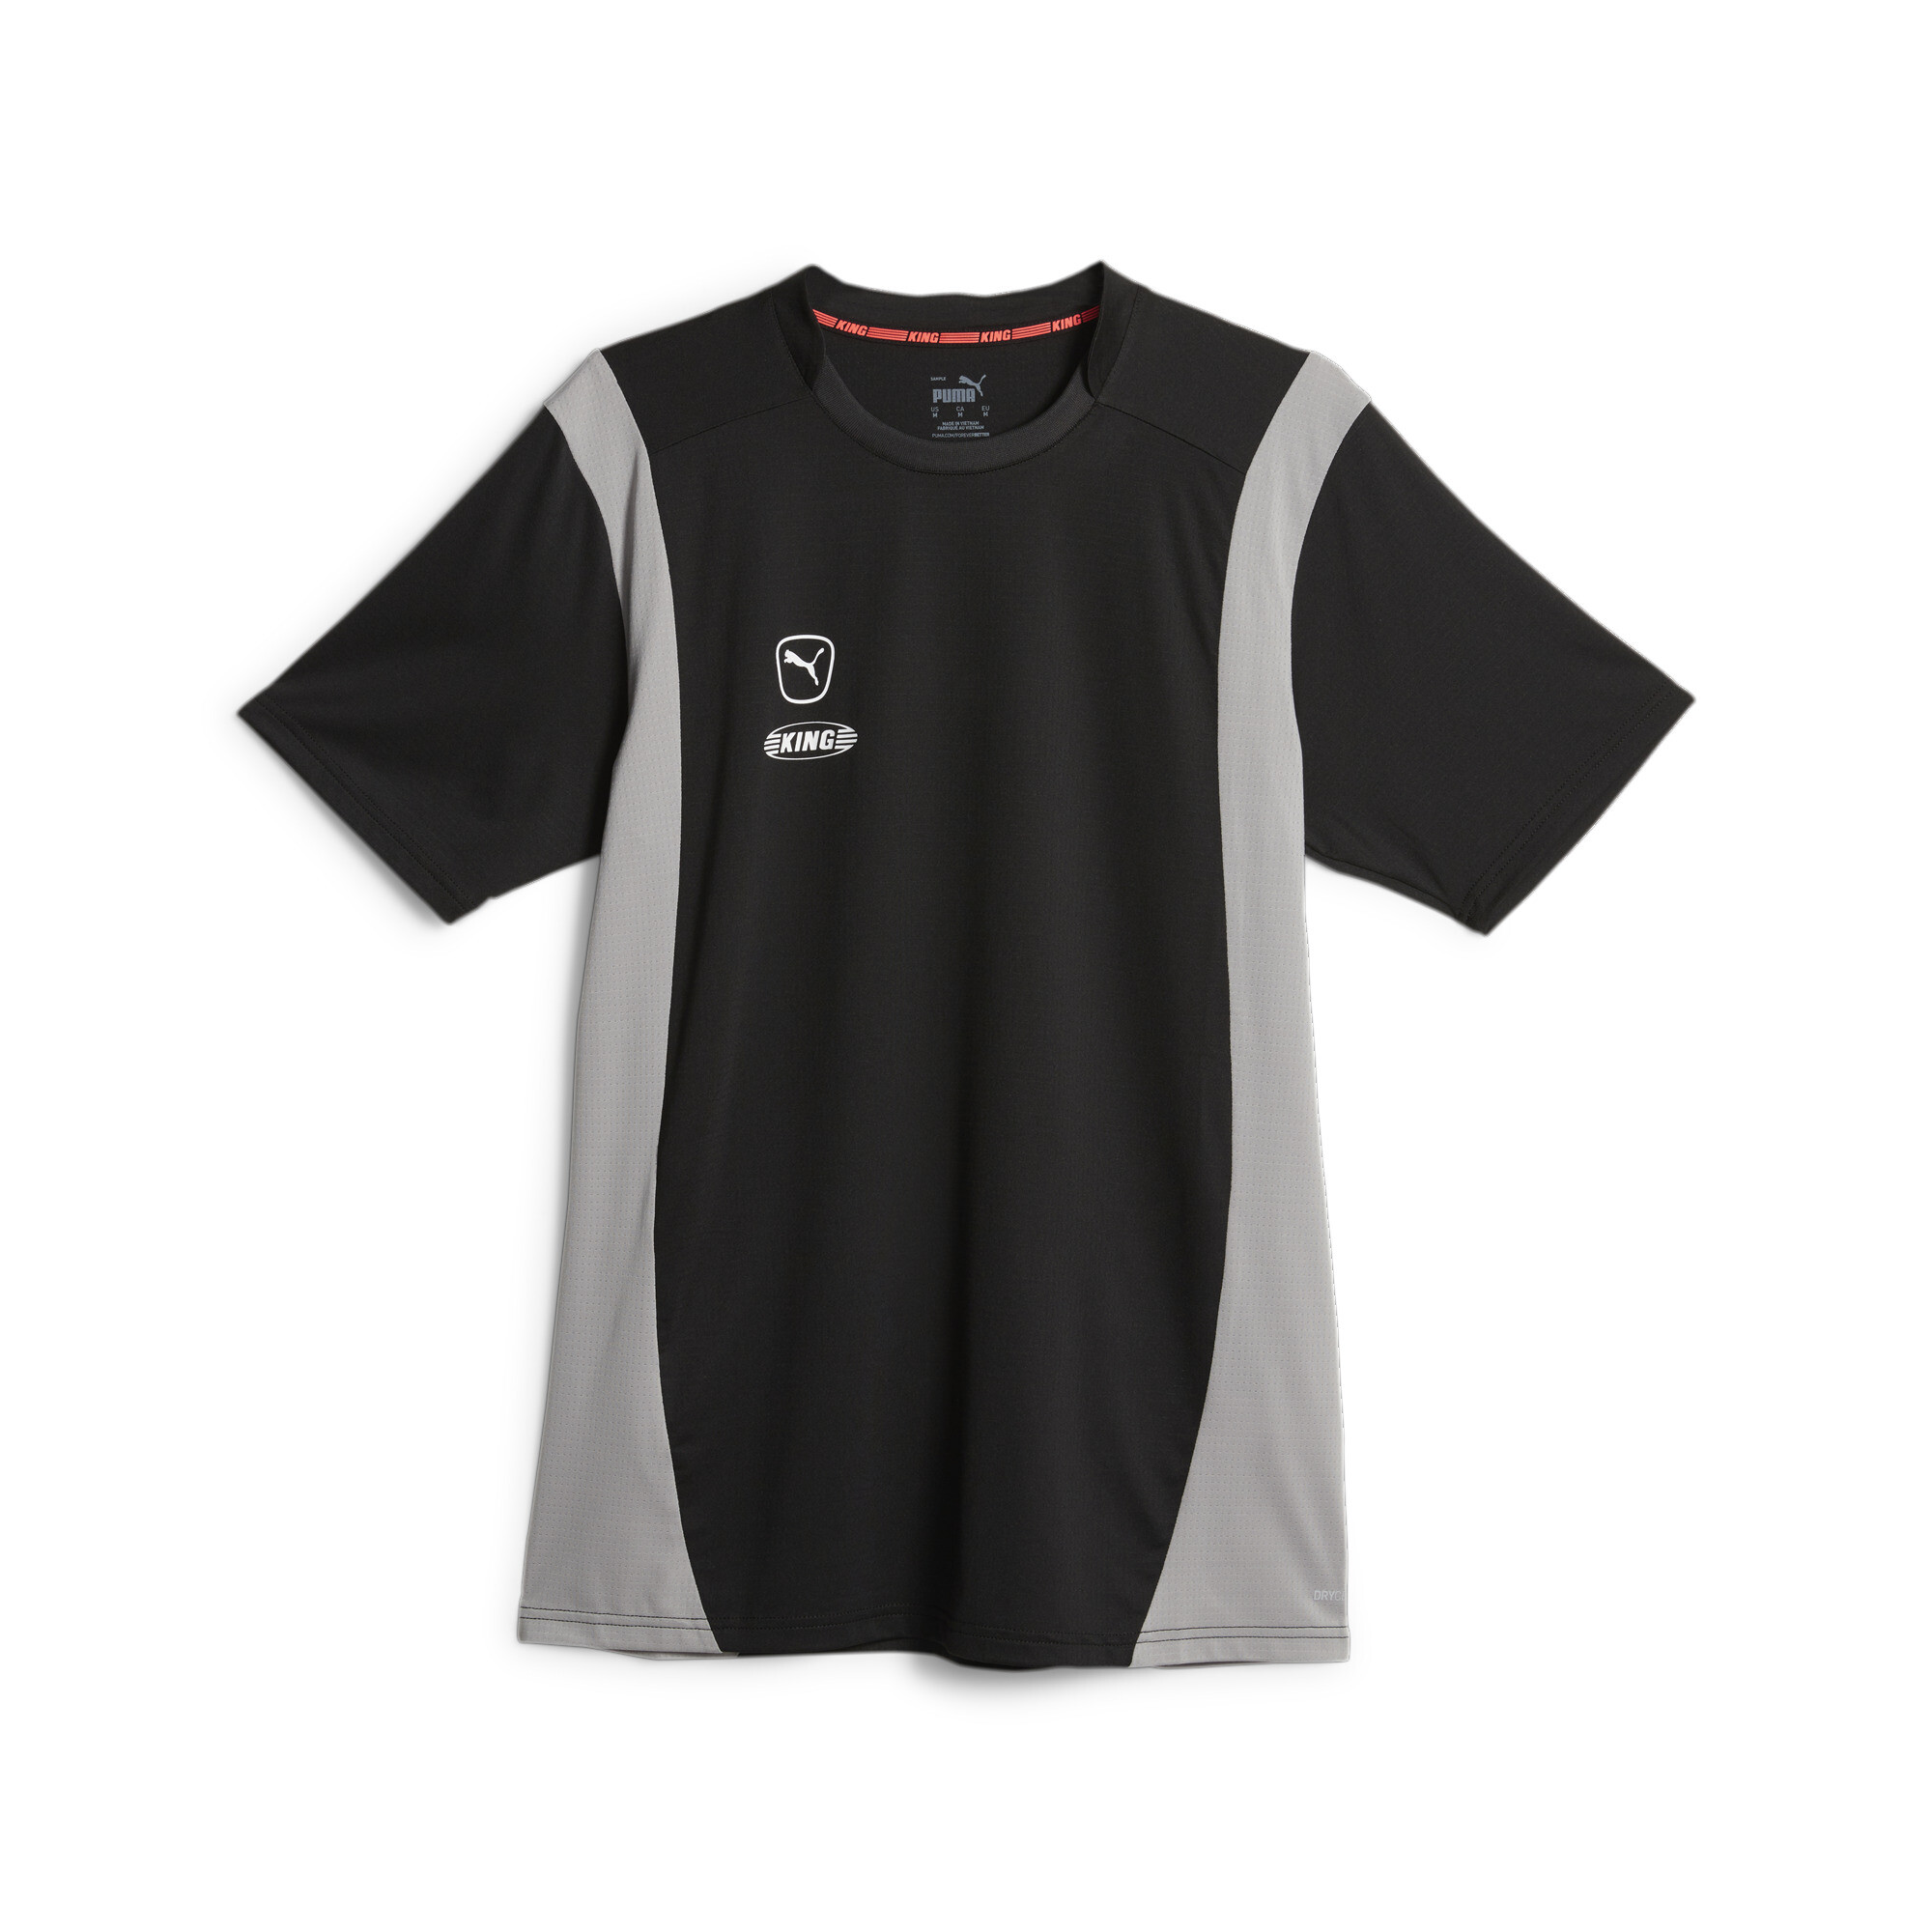 プーマ メンズ サッカー キング プロ Tシャツ メンズ PUMA Black-Concrete Gray ｜PUMA.comの大画像